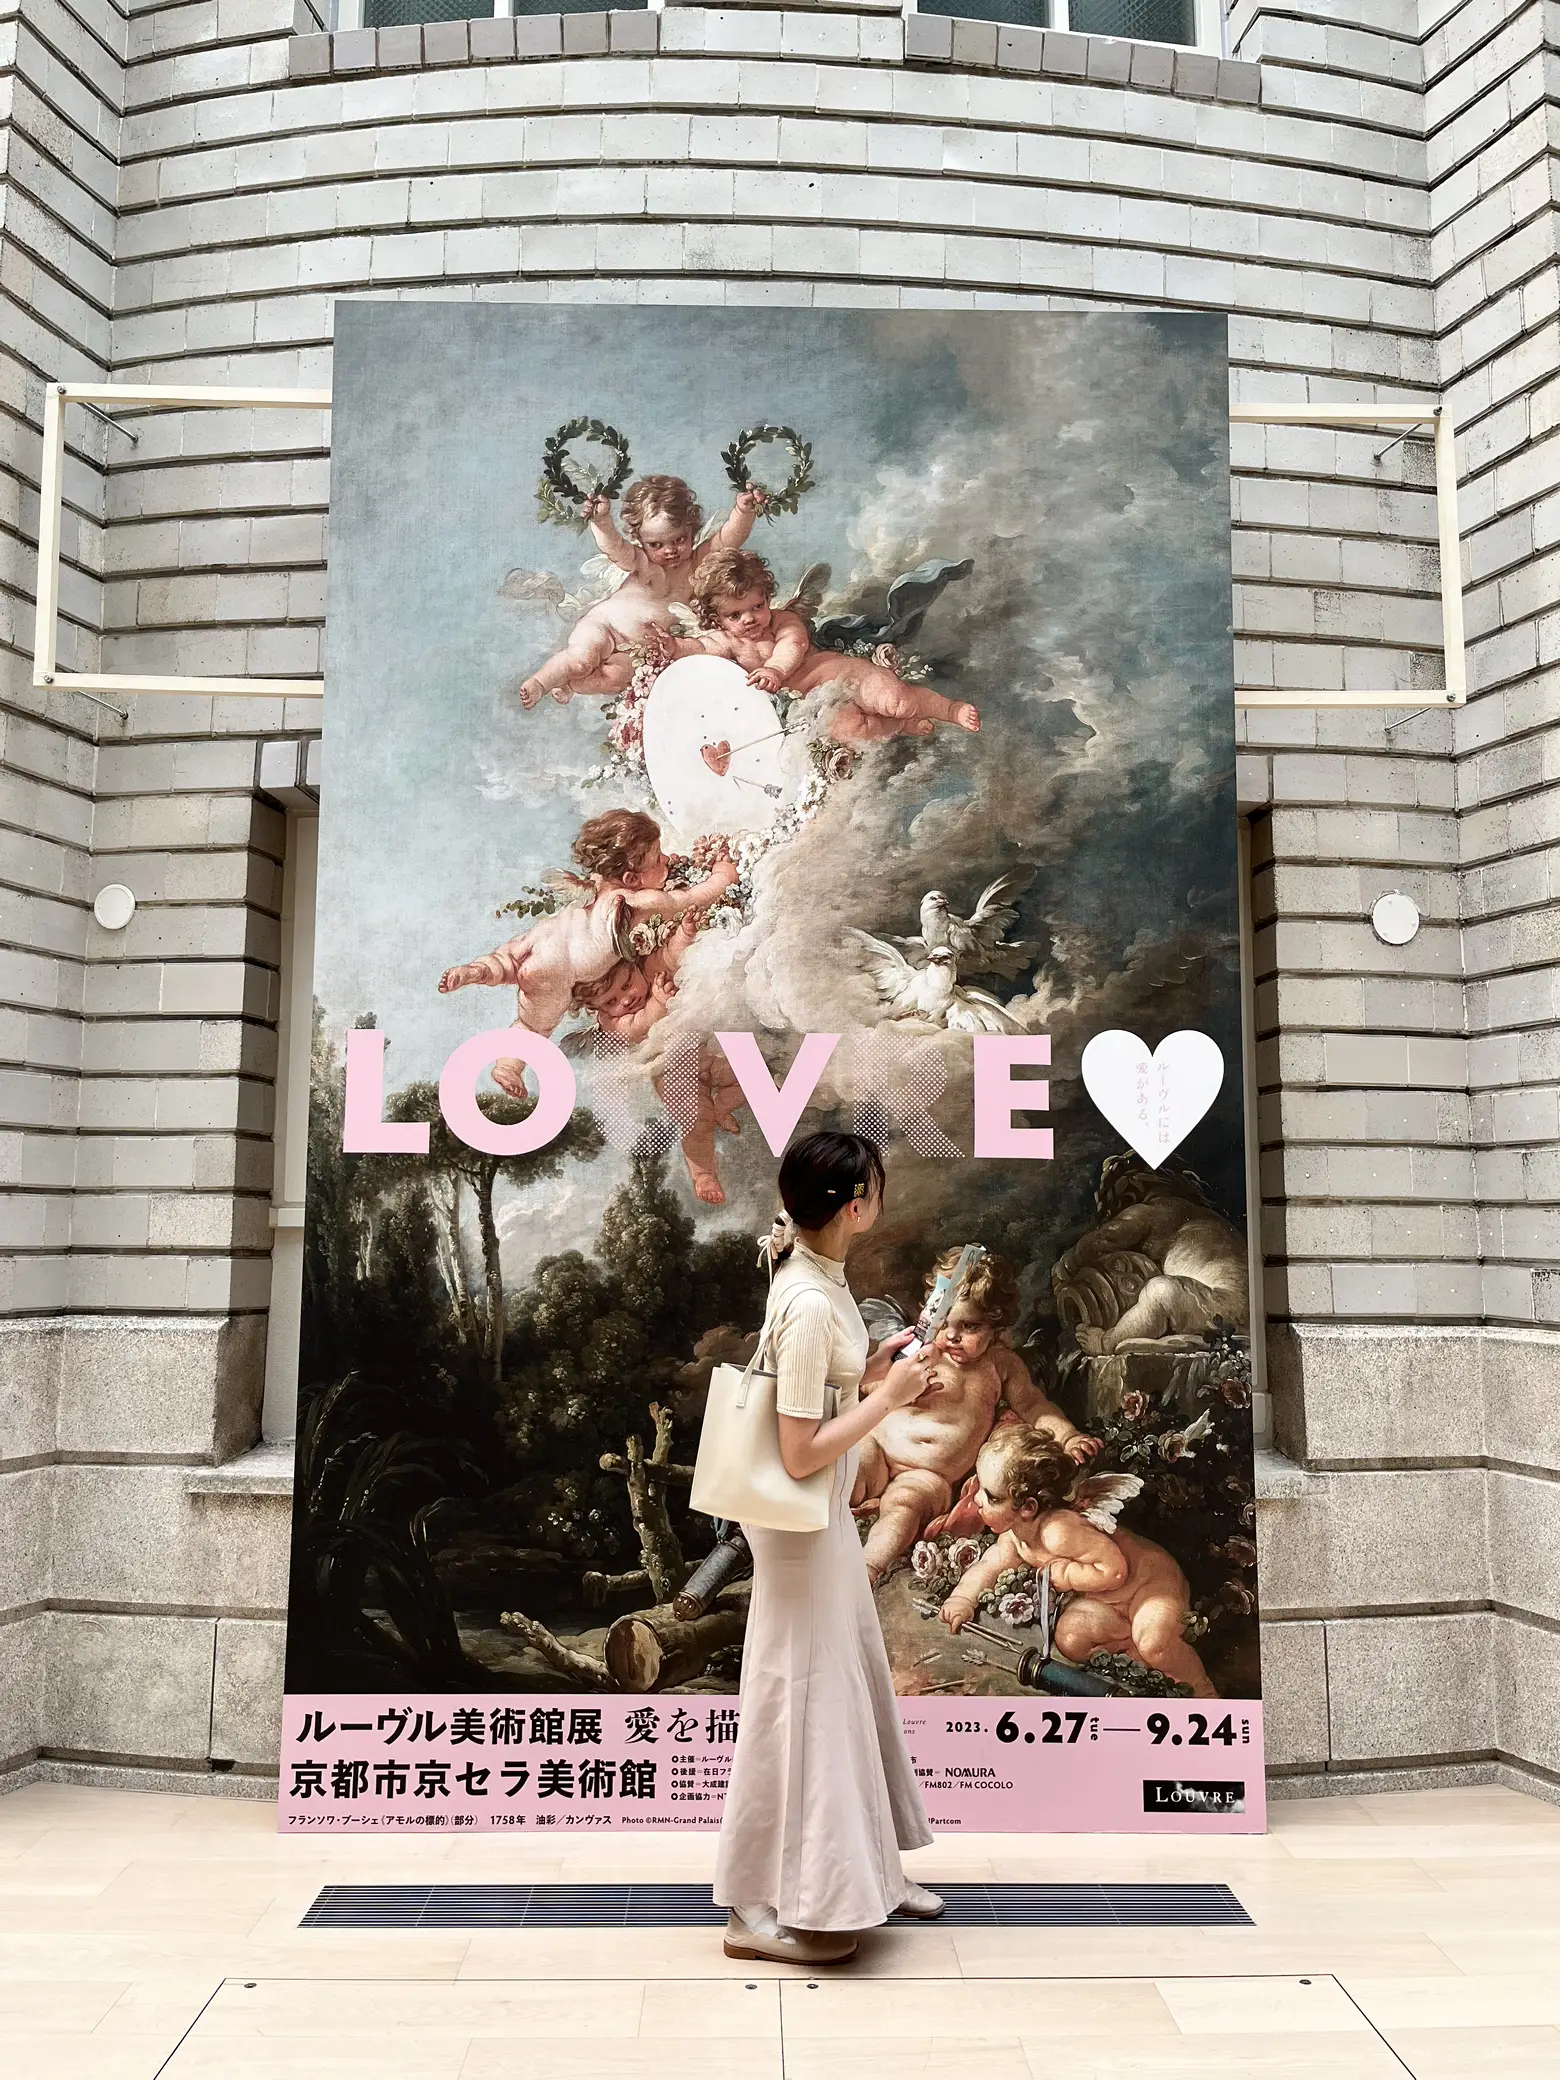 ルーブル美術館展 愛を描く 京都市京セラ美術館 9月24日まで チケット2